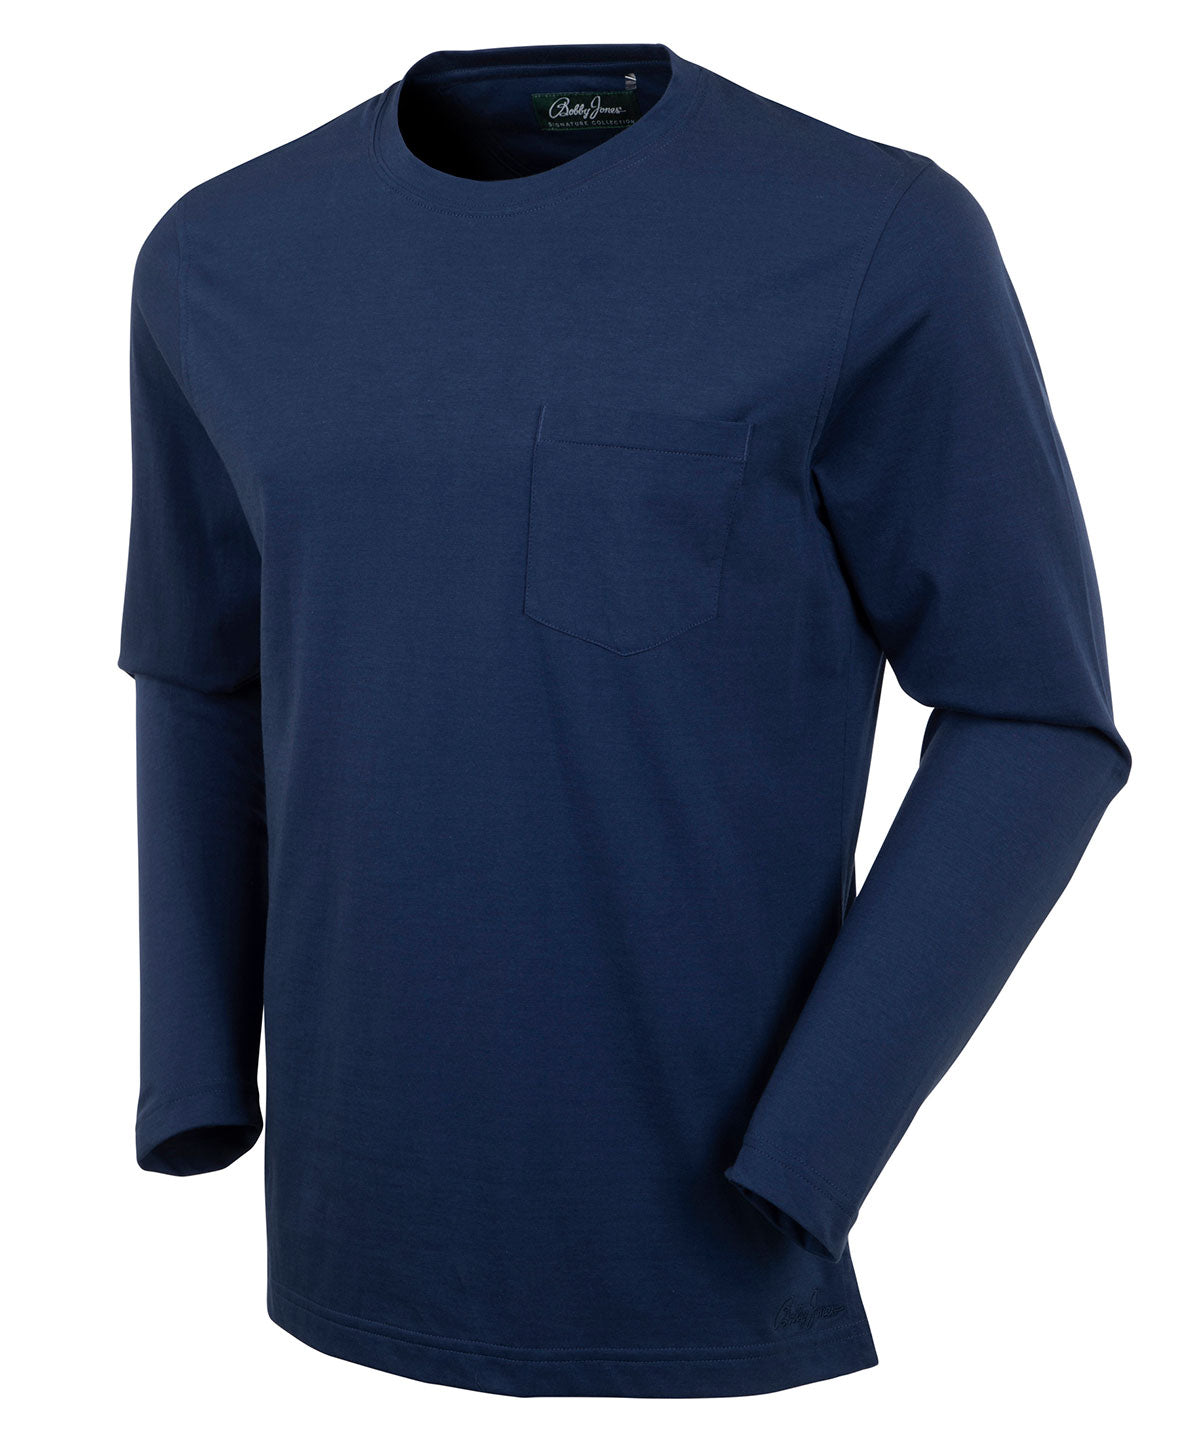 Lane Bryant Dark Turquoise Long Sleeve Shirt 22/24 V-neck Pima